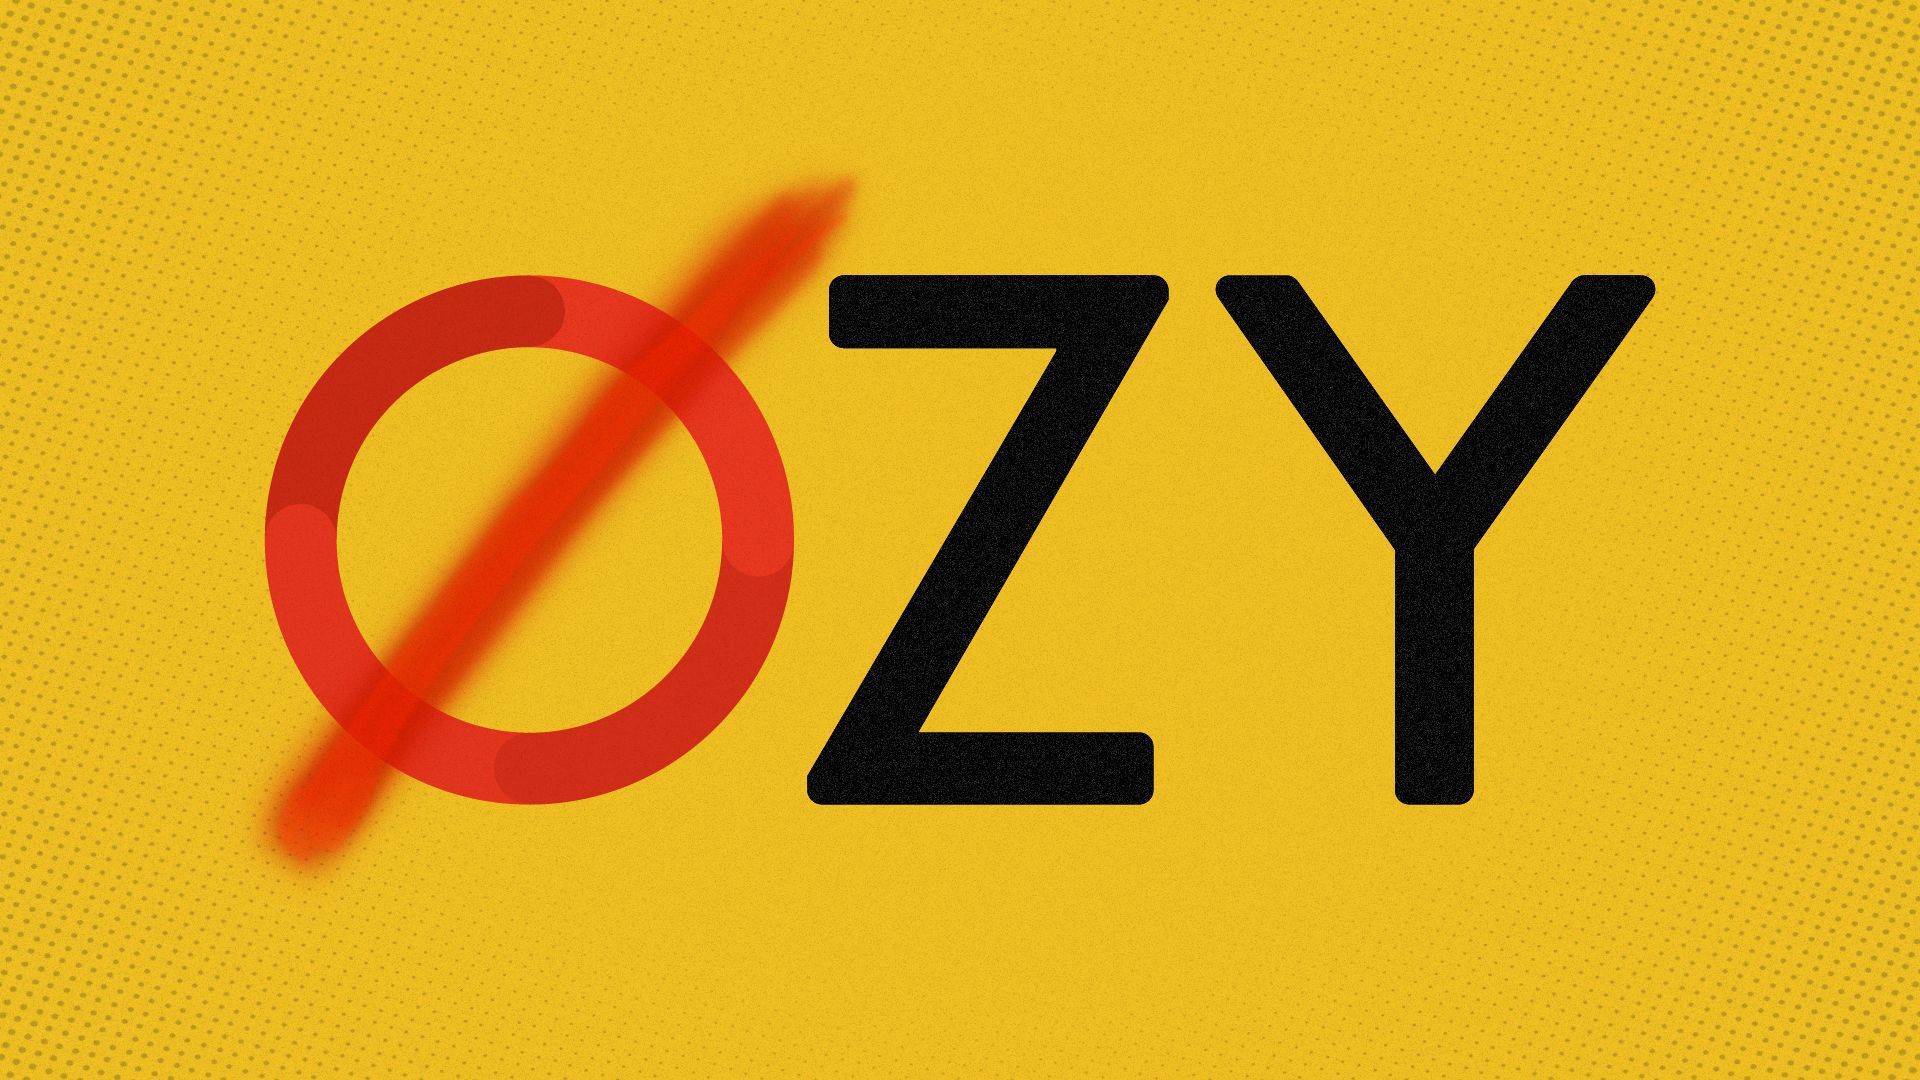 An OZY logo with a cross through the O